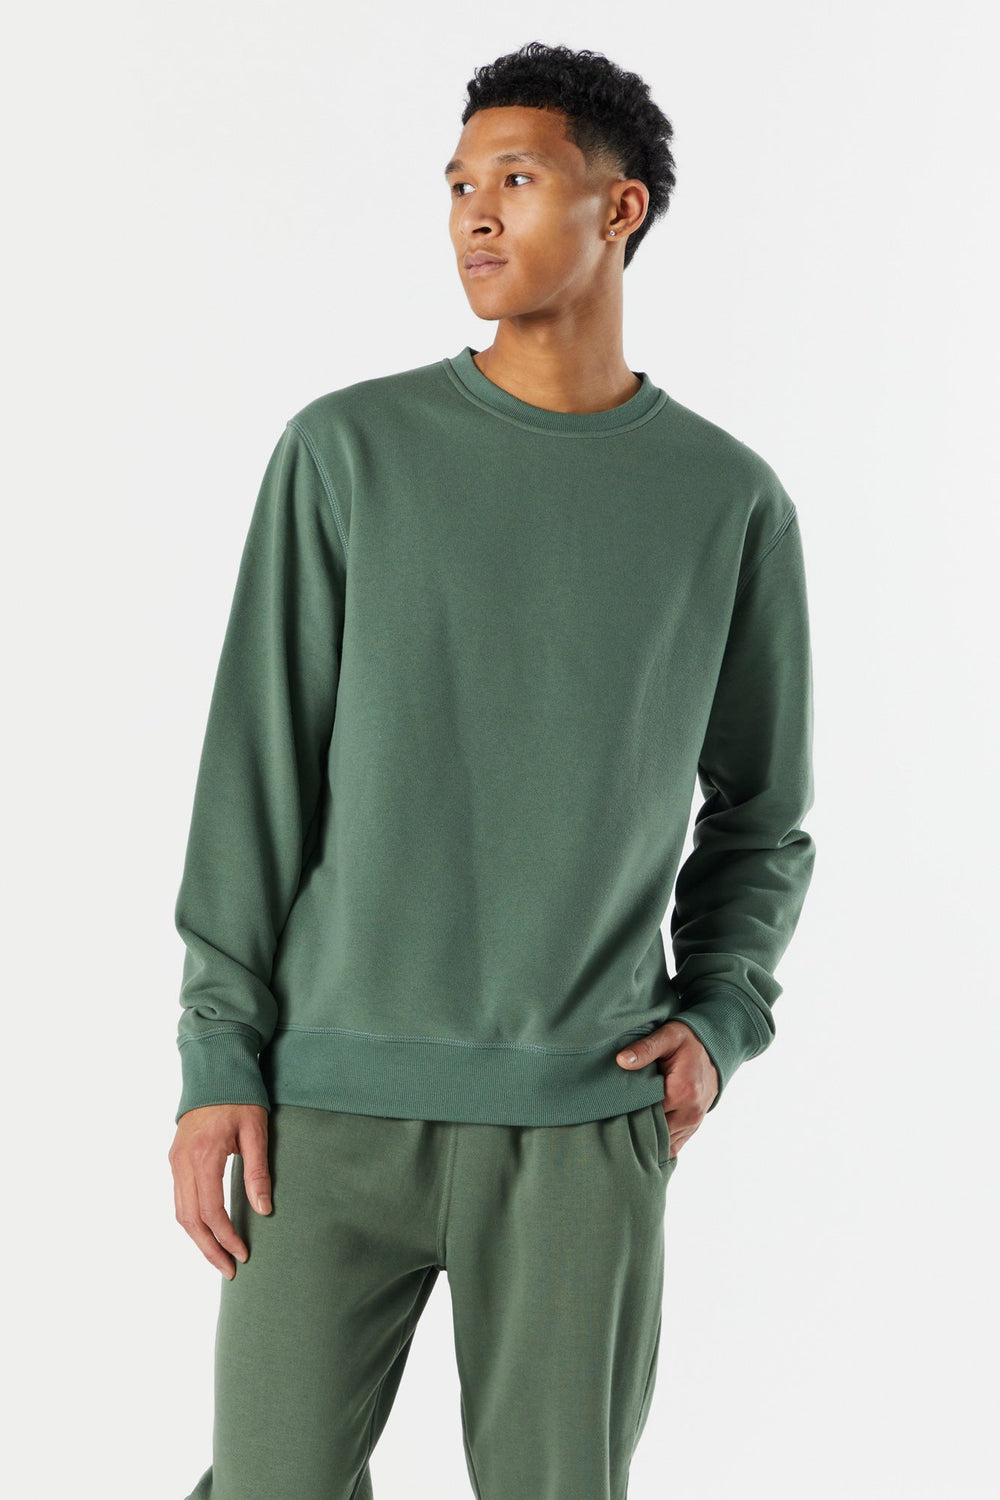 Solid Colored Fleece Sweatshirt Solid Colored Fleece Sweatshirt 10